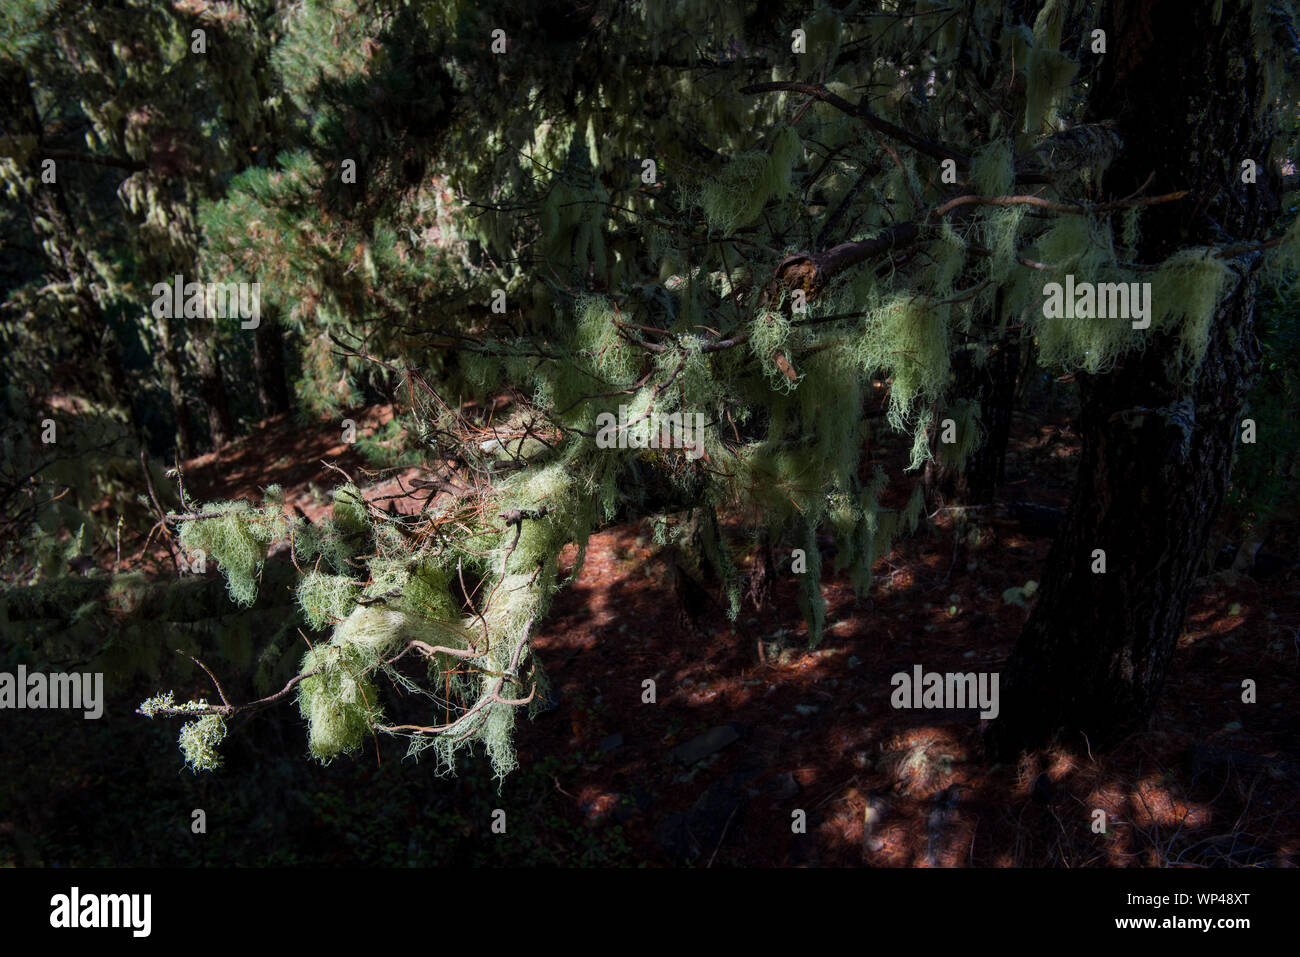 La Gomera, Isole Canarie, centrali antiche foreste Laurisilva sulla montagna centrale con molte specie endemiche. Alberi coperti da mossi e licheni Foto Stock